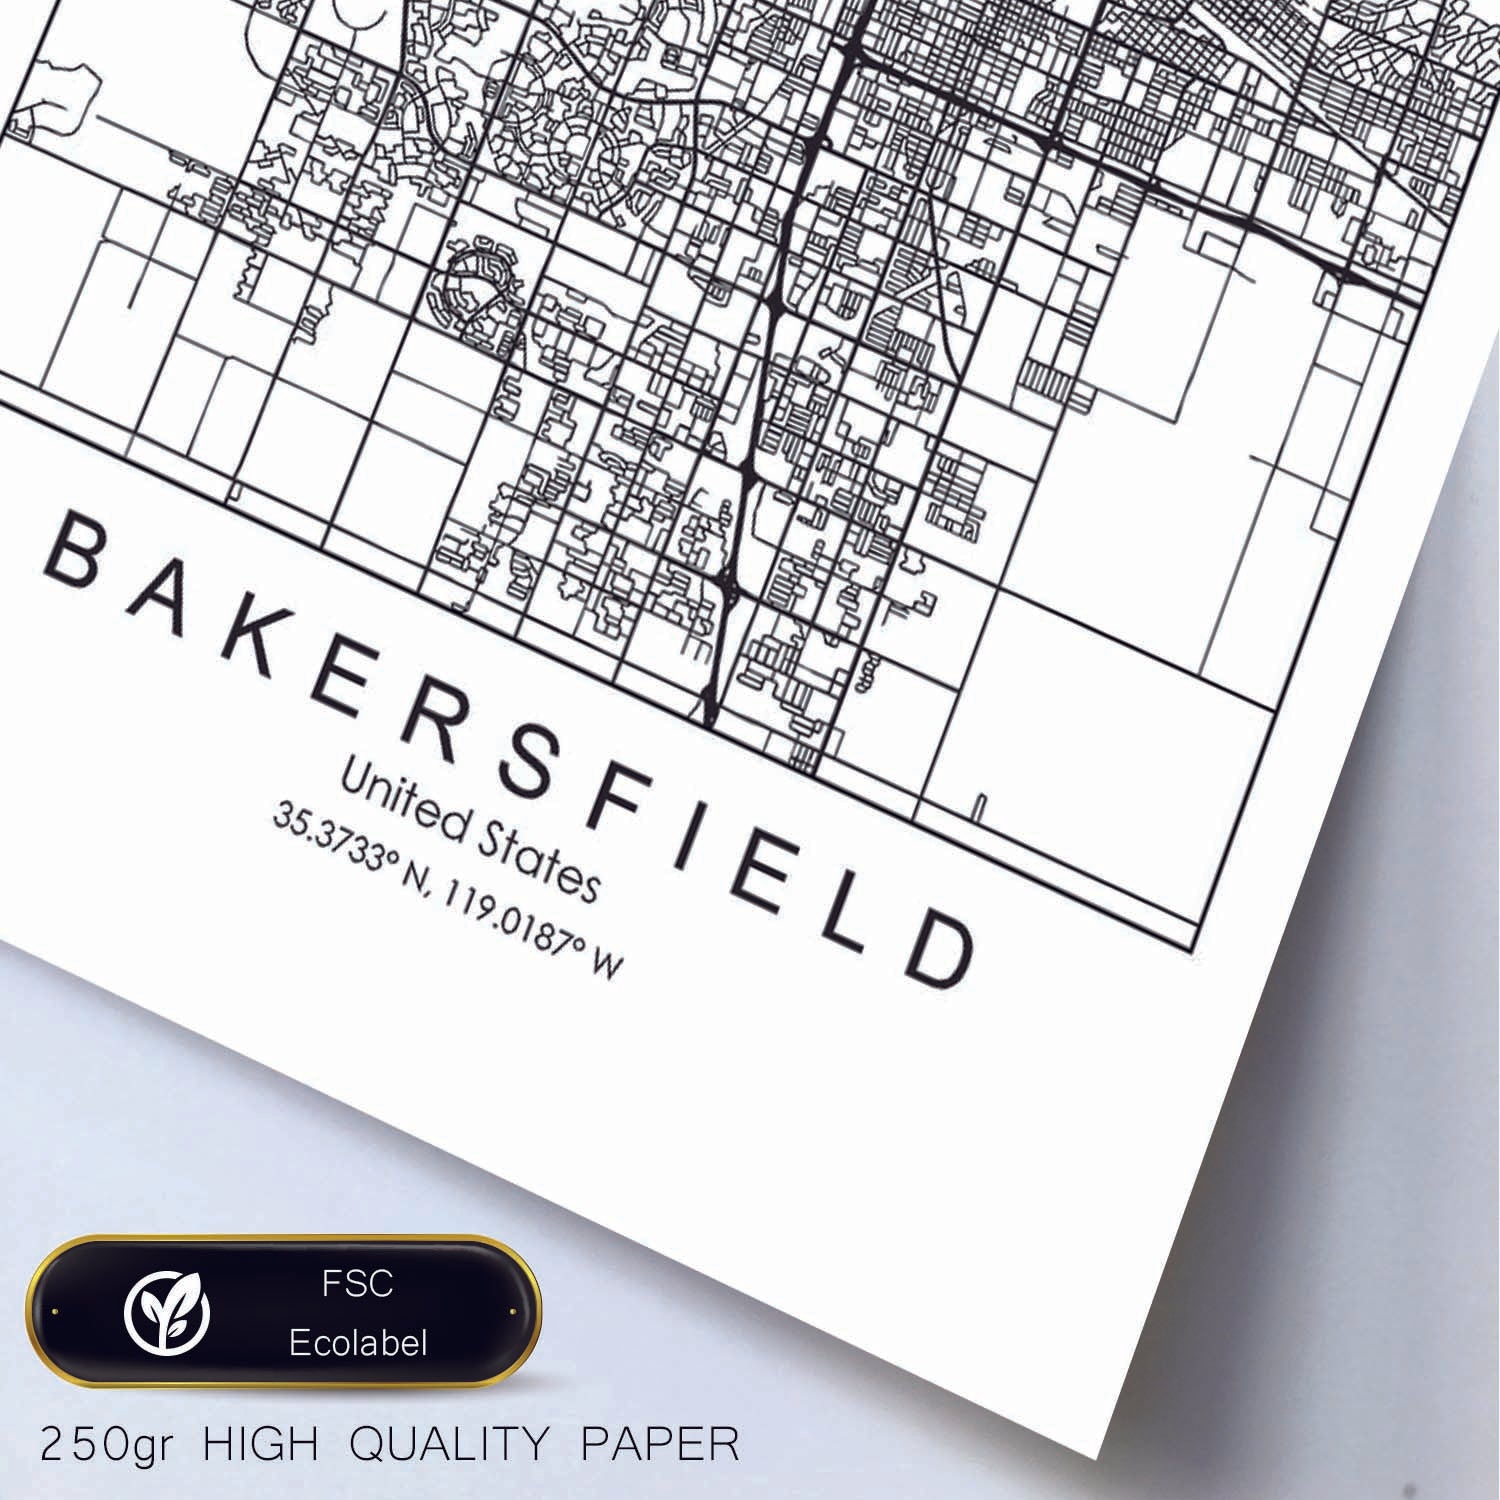 Poster con mapa de Bakersfield. Lámina de Estados Unidos, con imágenes de mapas y carreteras-Artwork-Nacnic-Nacnic Estudio SL